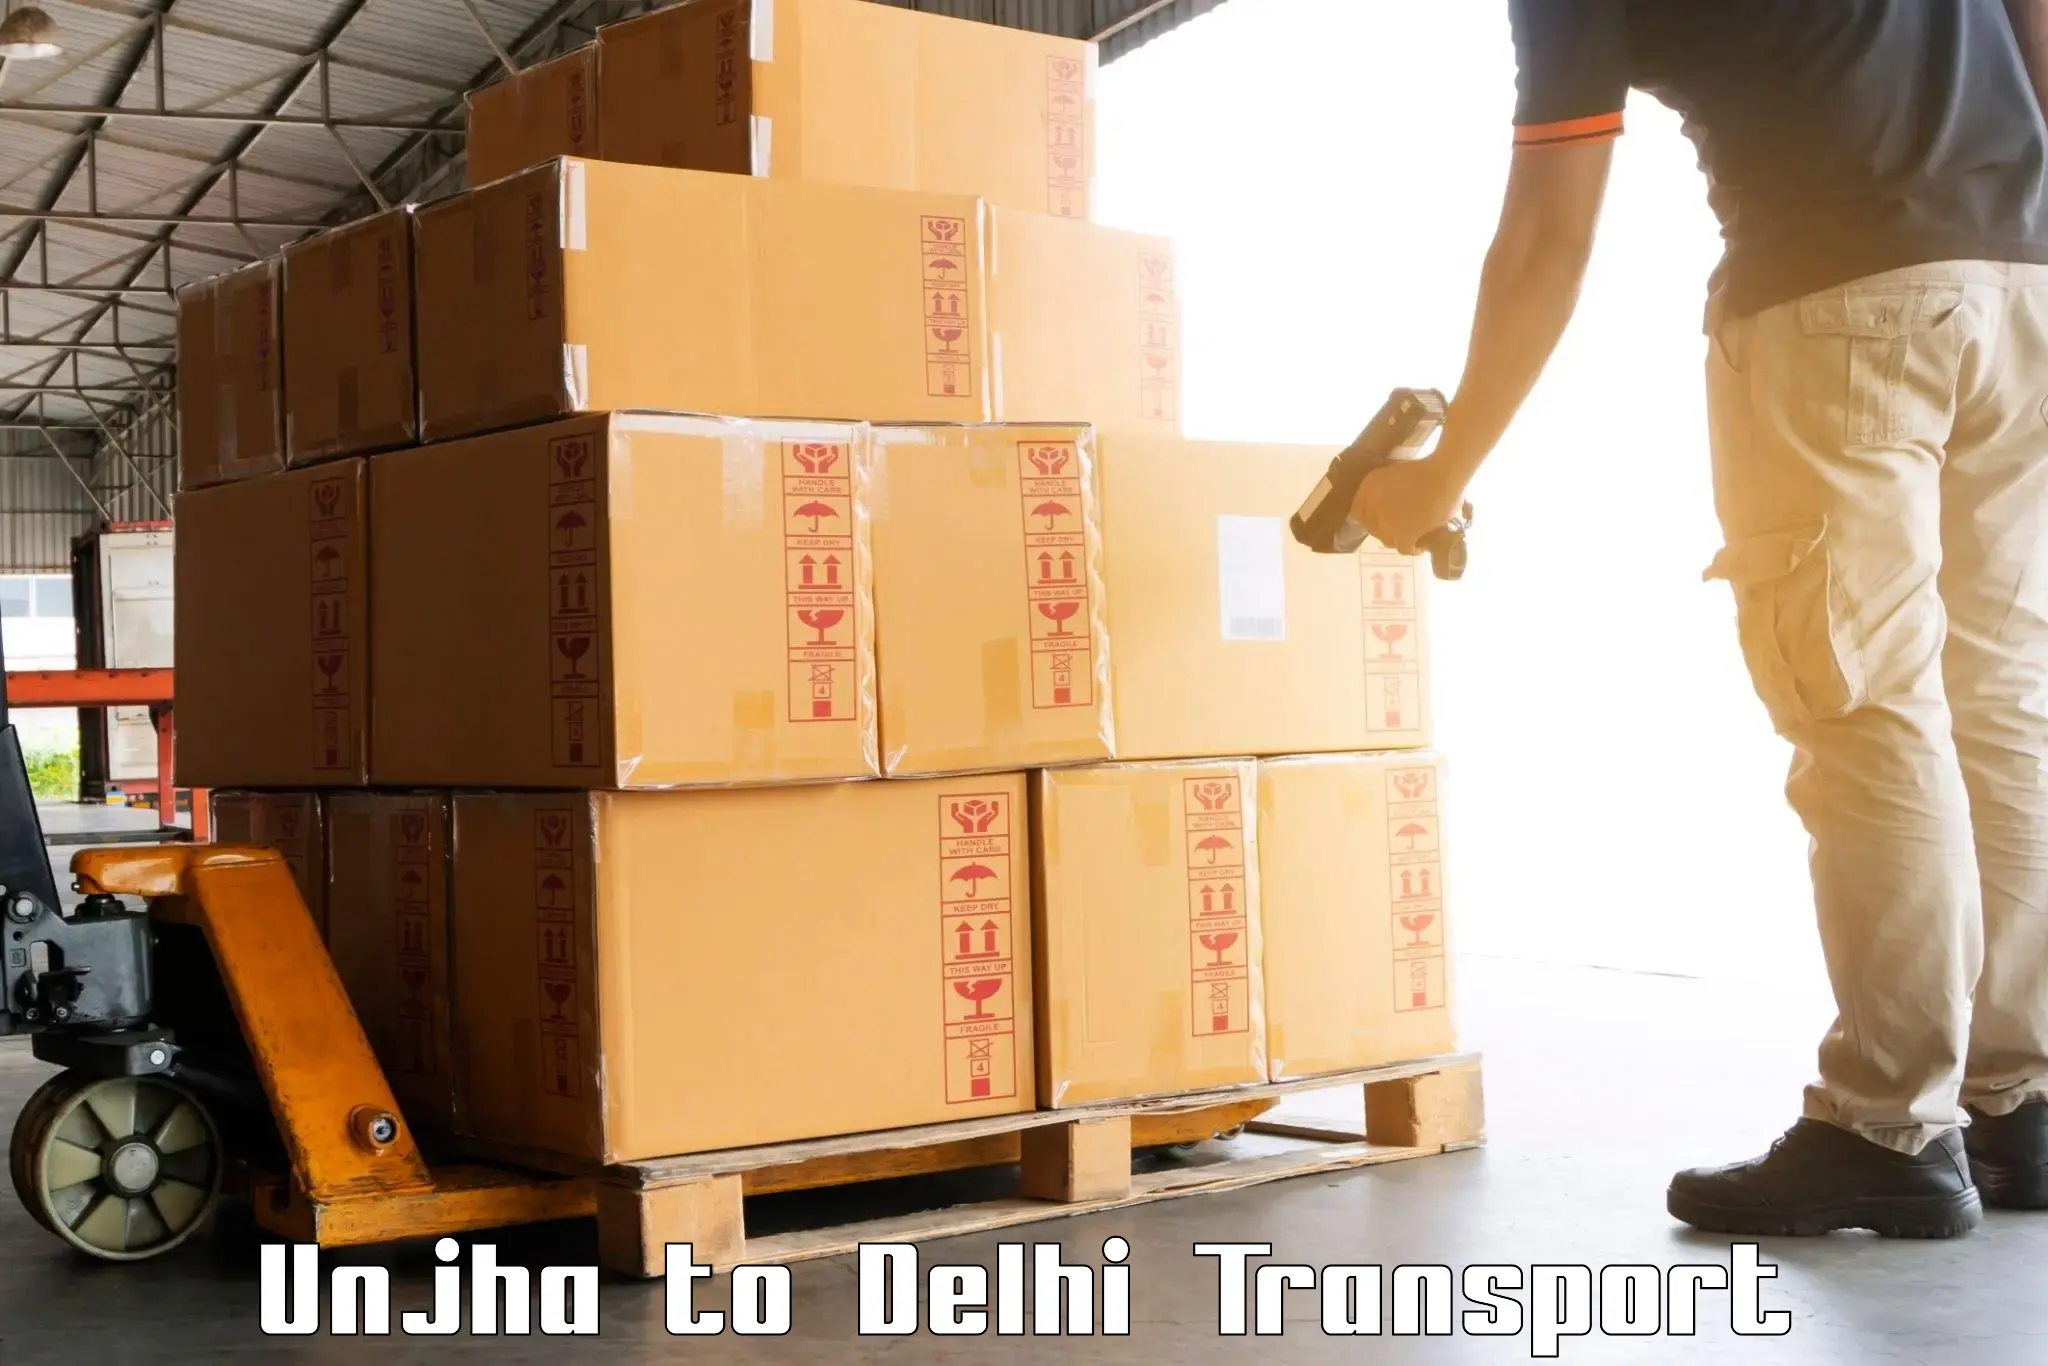 Nearest transport service Unjha to Jhilmil